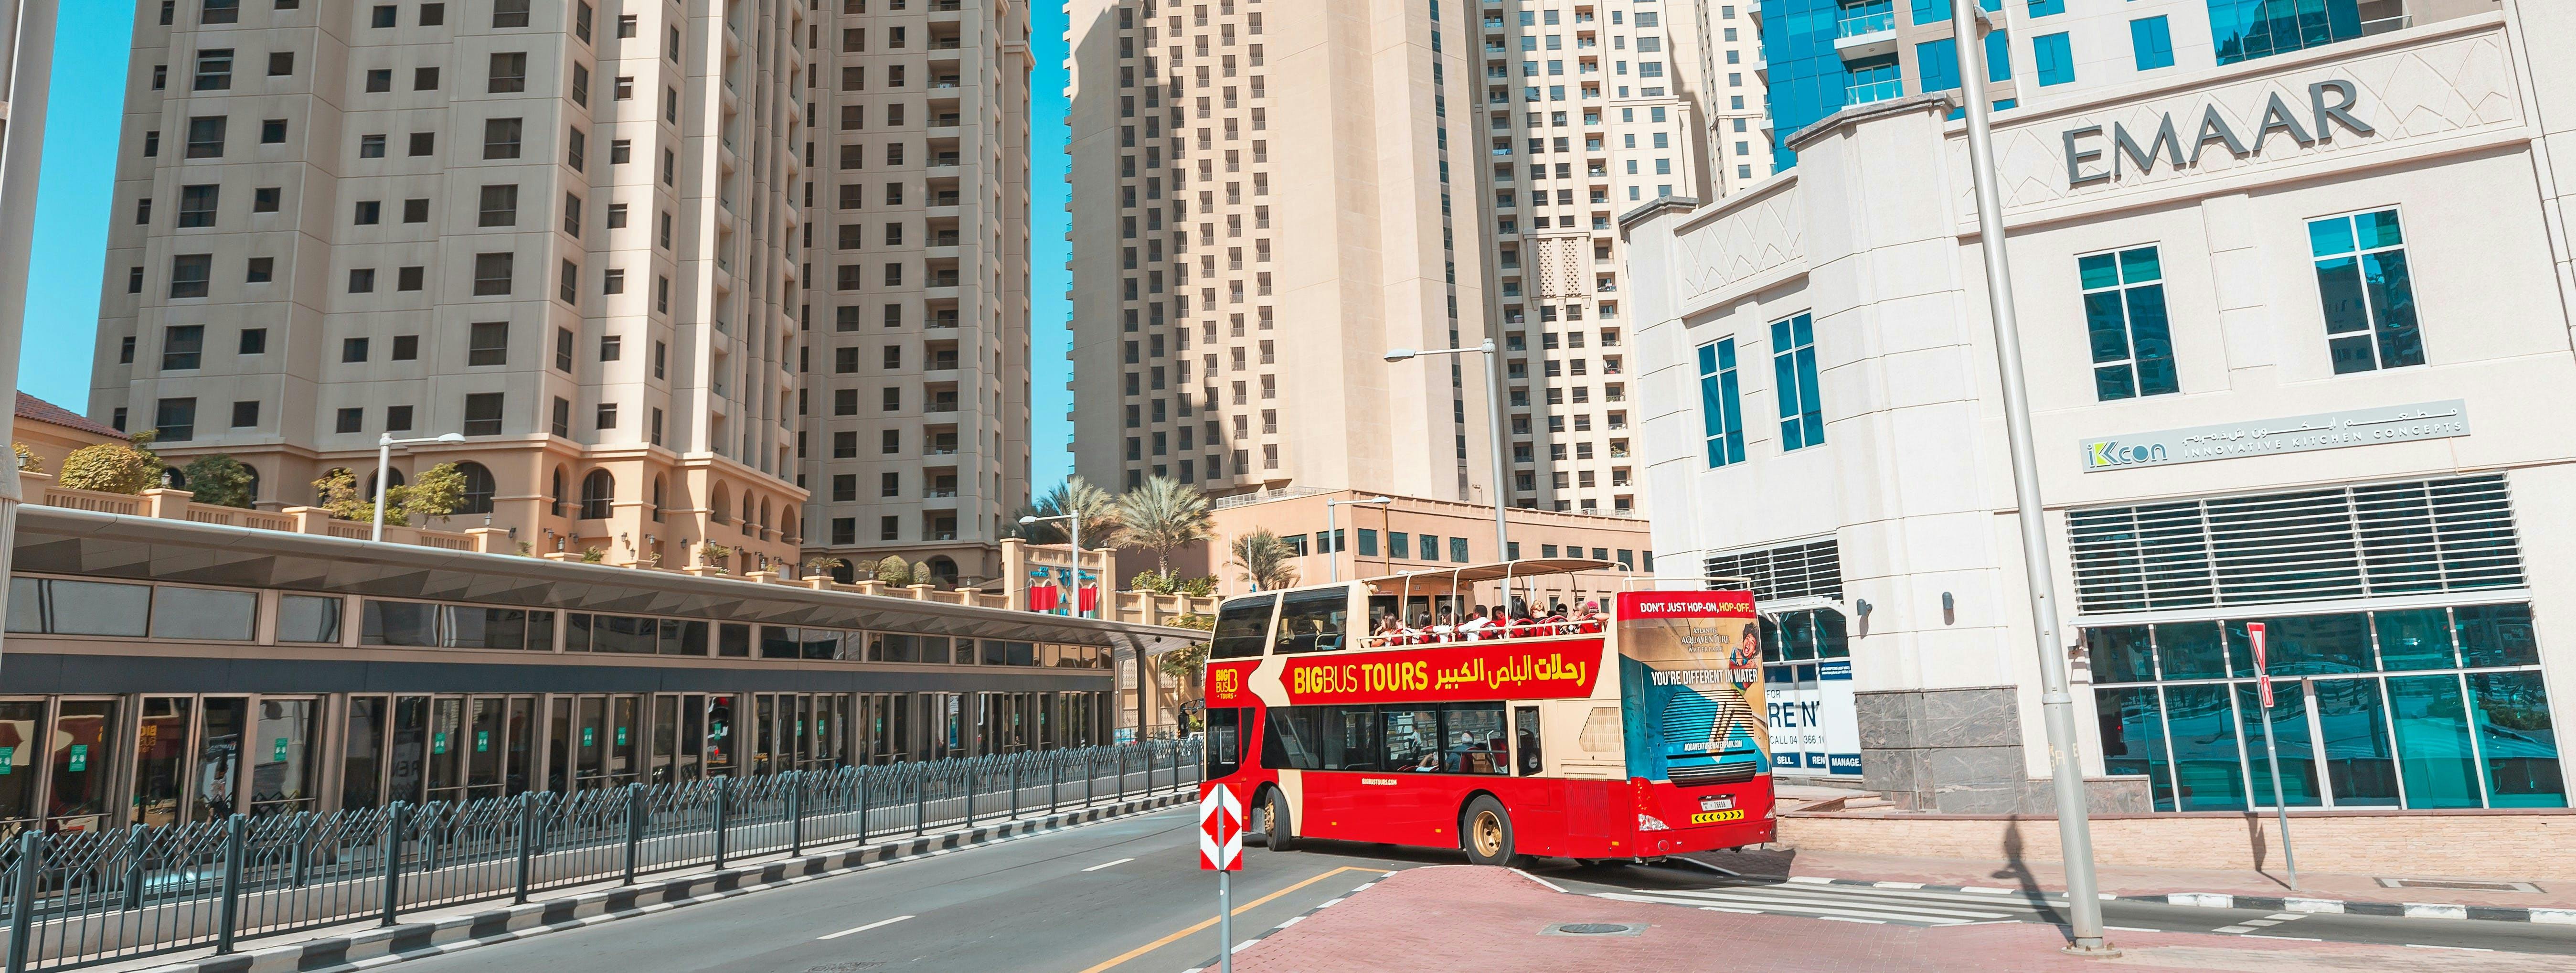 Excursão de ônibus grande em Dubai